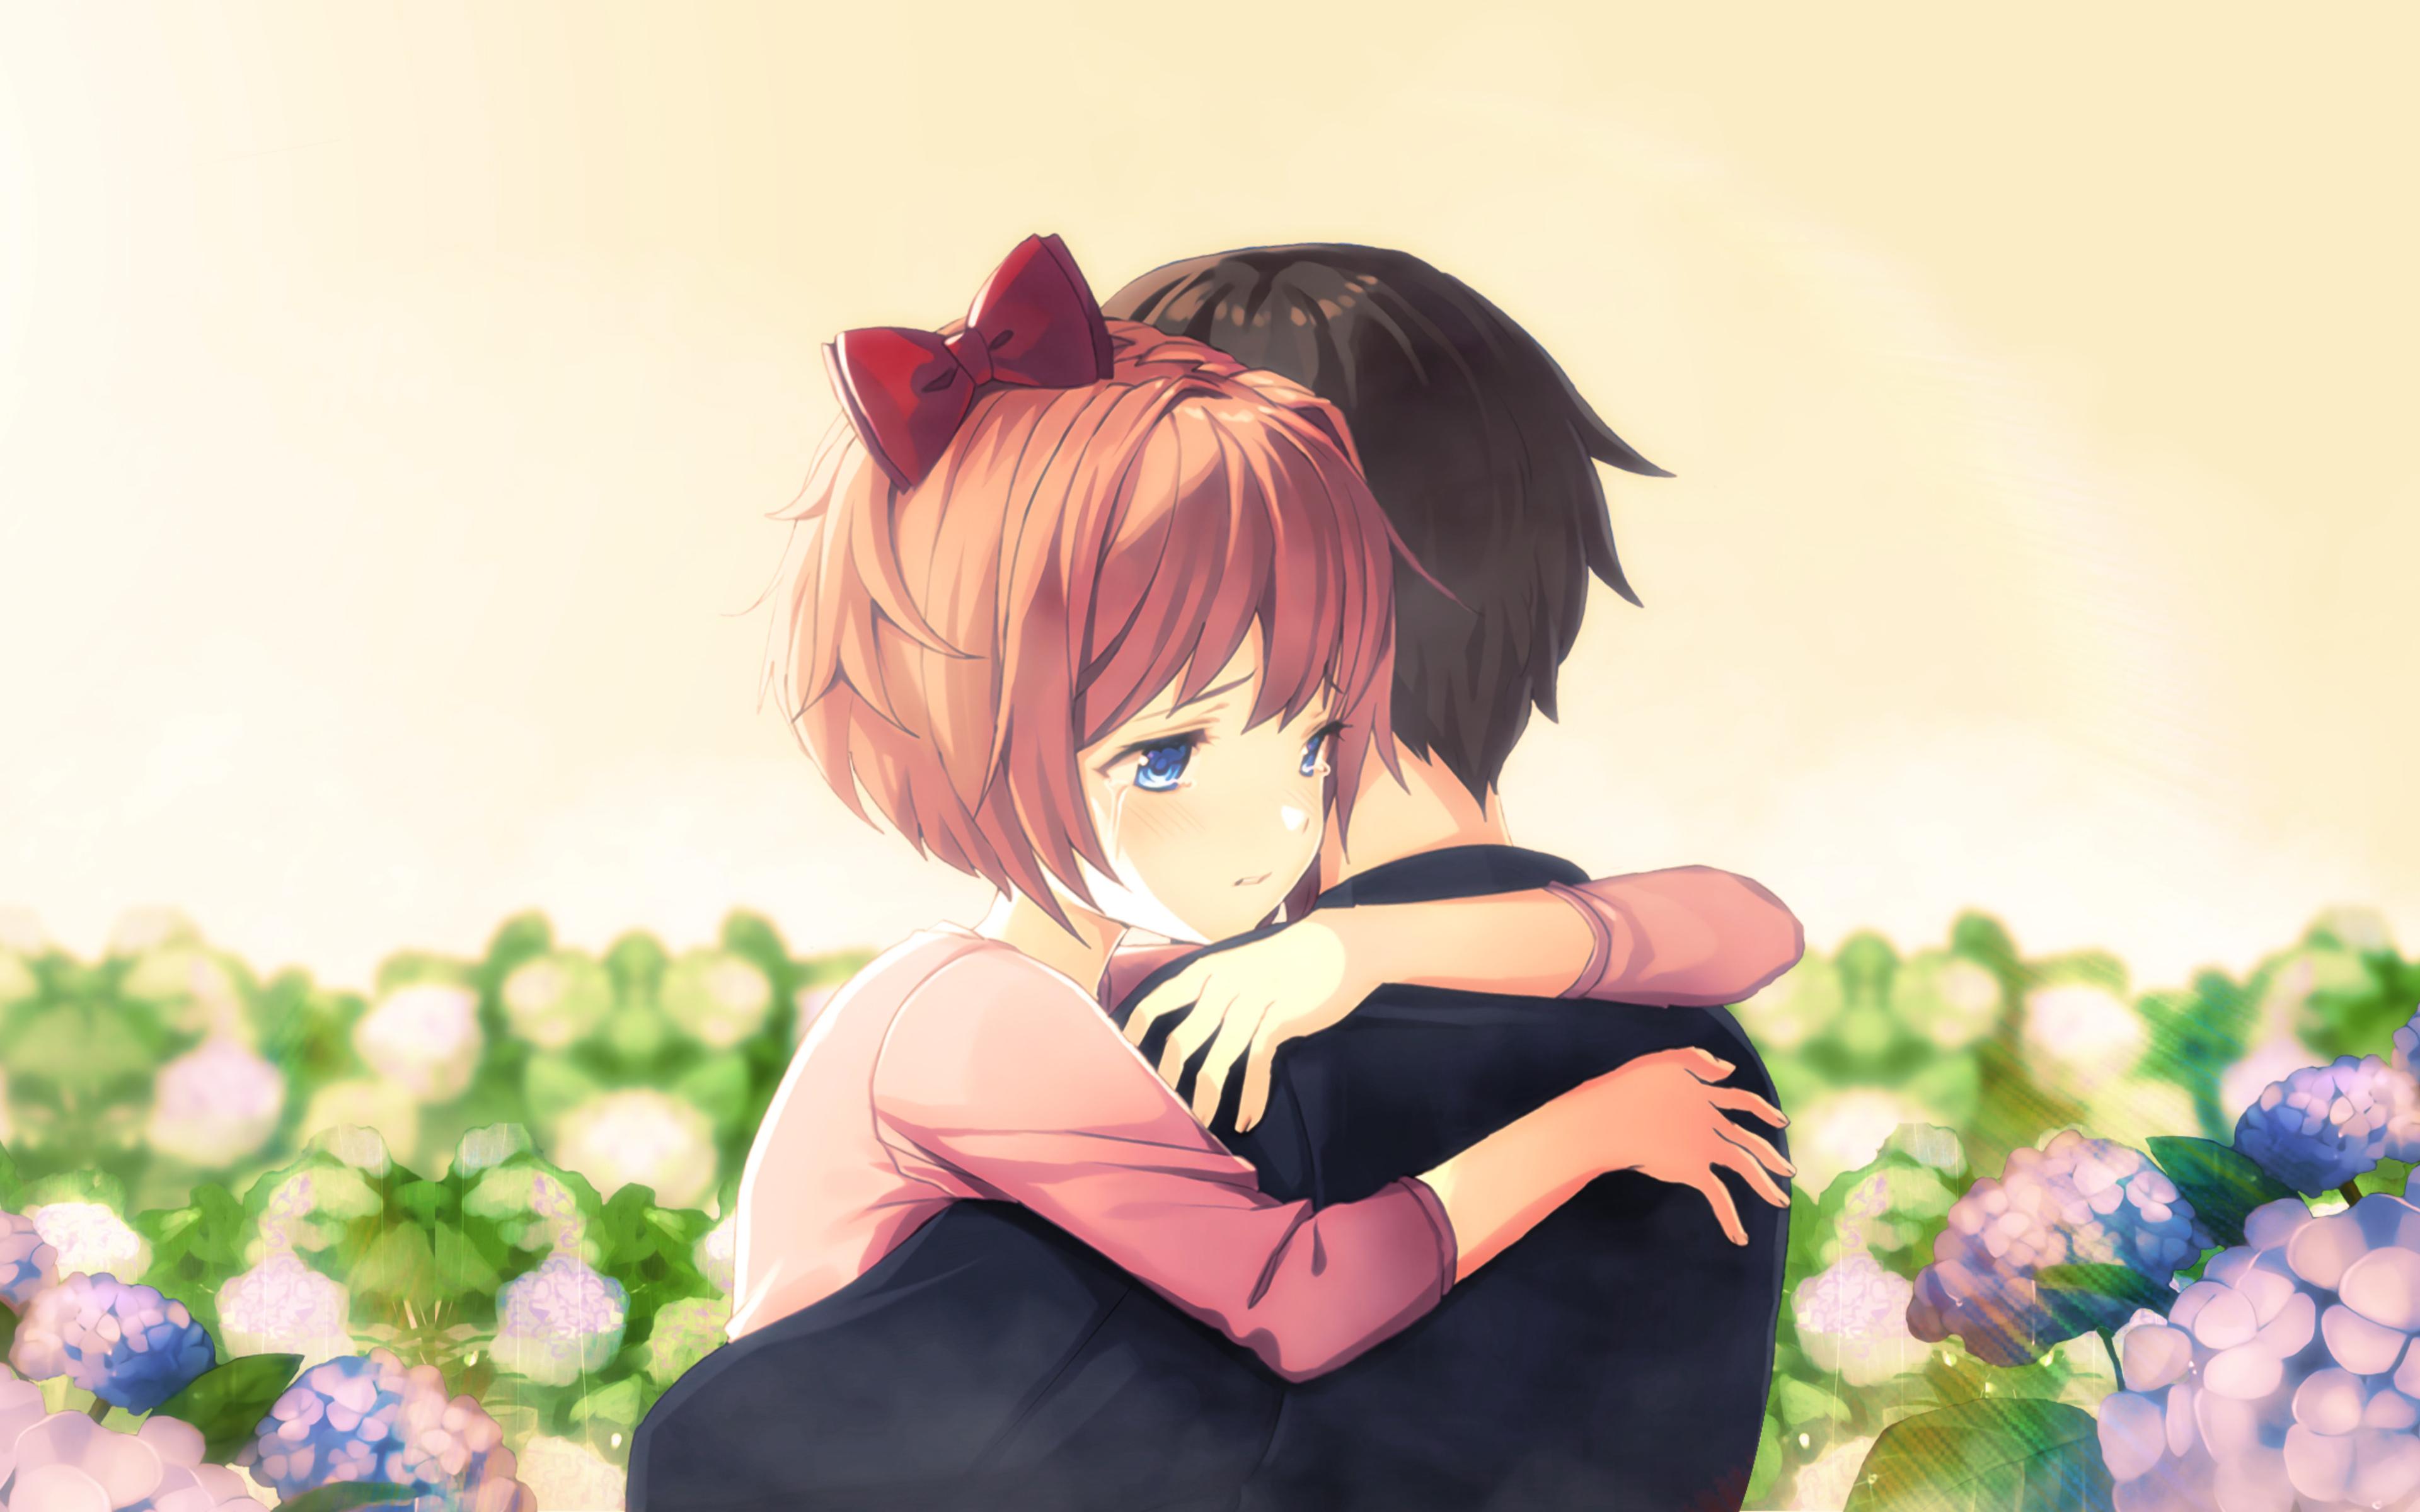 Anime Couple Cuddling on Make a GIF